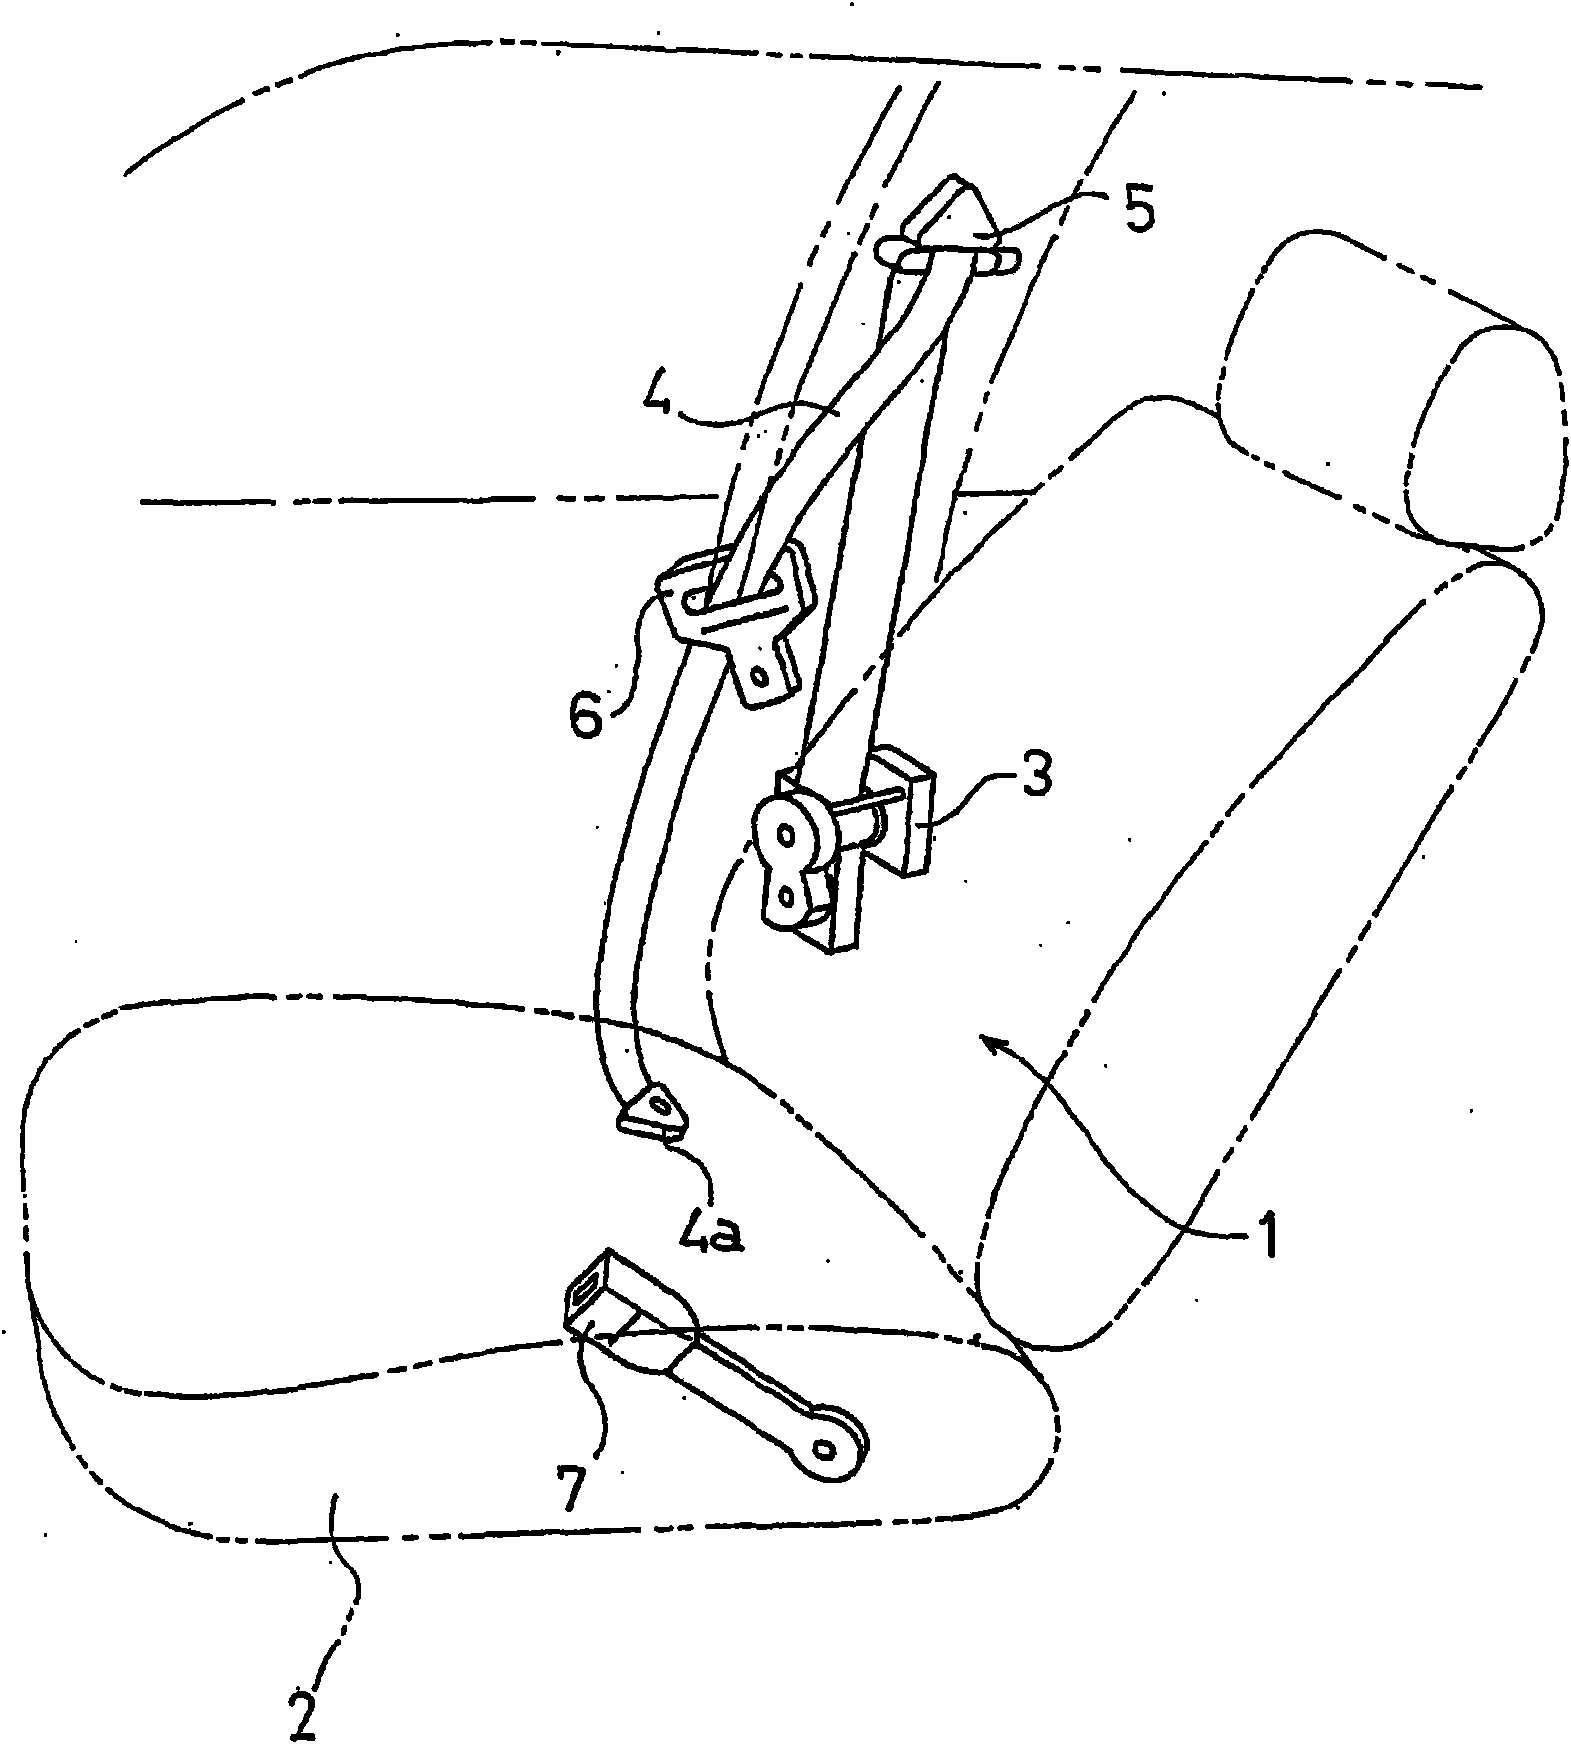 Pretensioner, seatbelt retractor and seatbelt device